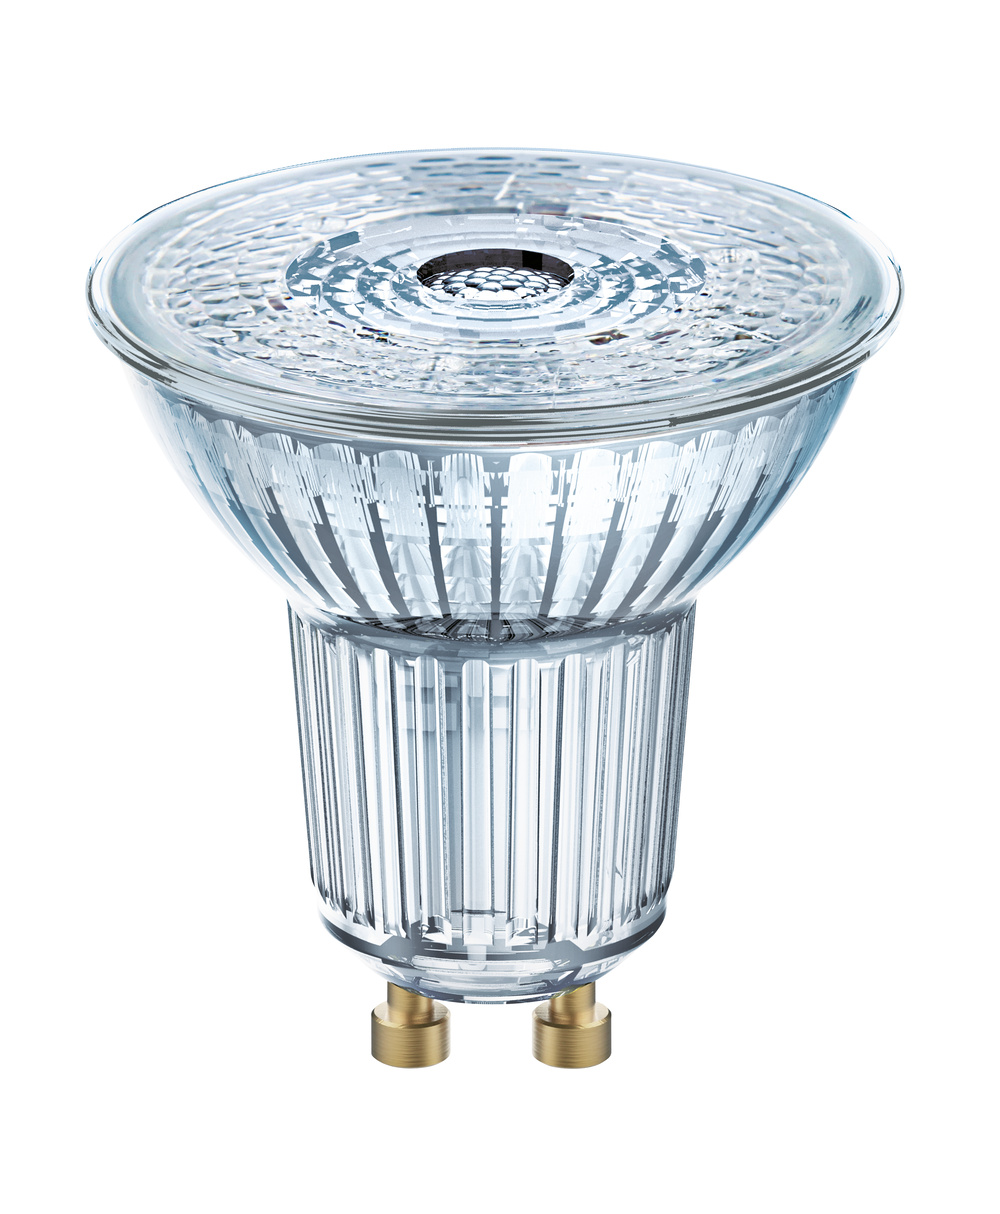 Ledvance LED lamp LED PAR16 DIM P 8.3W 927 GU10 – 4099854059117 – replacement for 80 W - 4099854059117